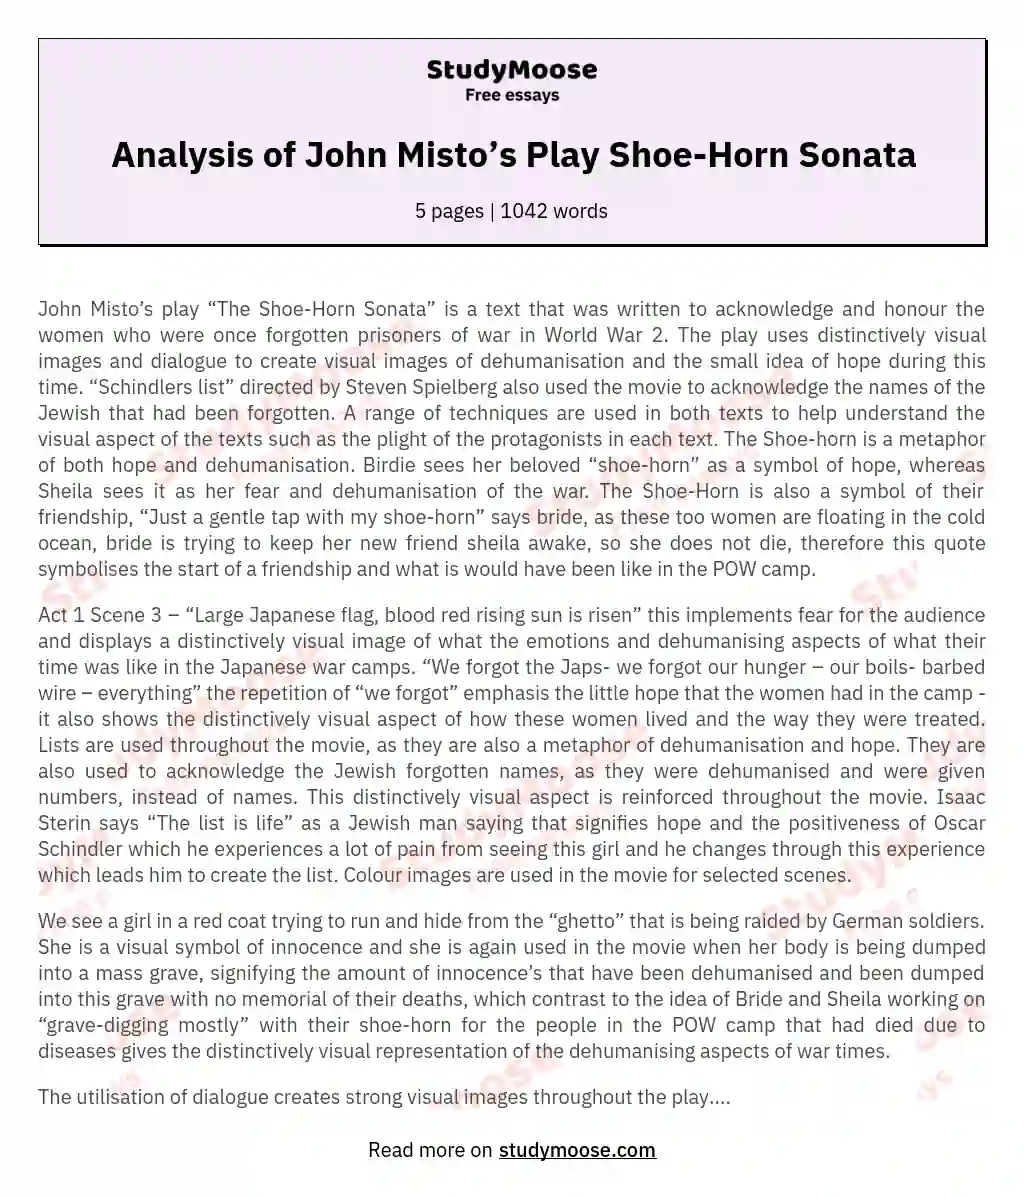 Analysis of John Misto’s Play Shoe-Horn Sonata